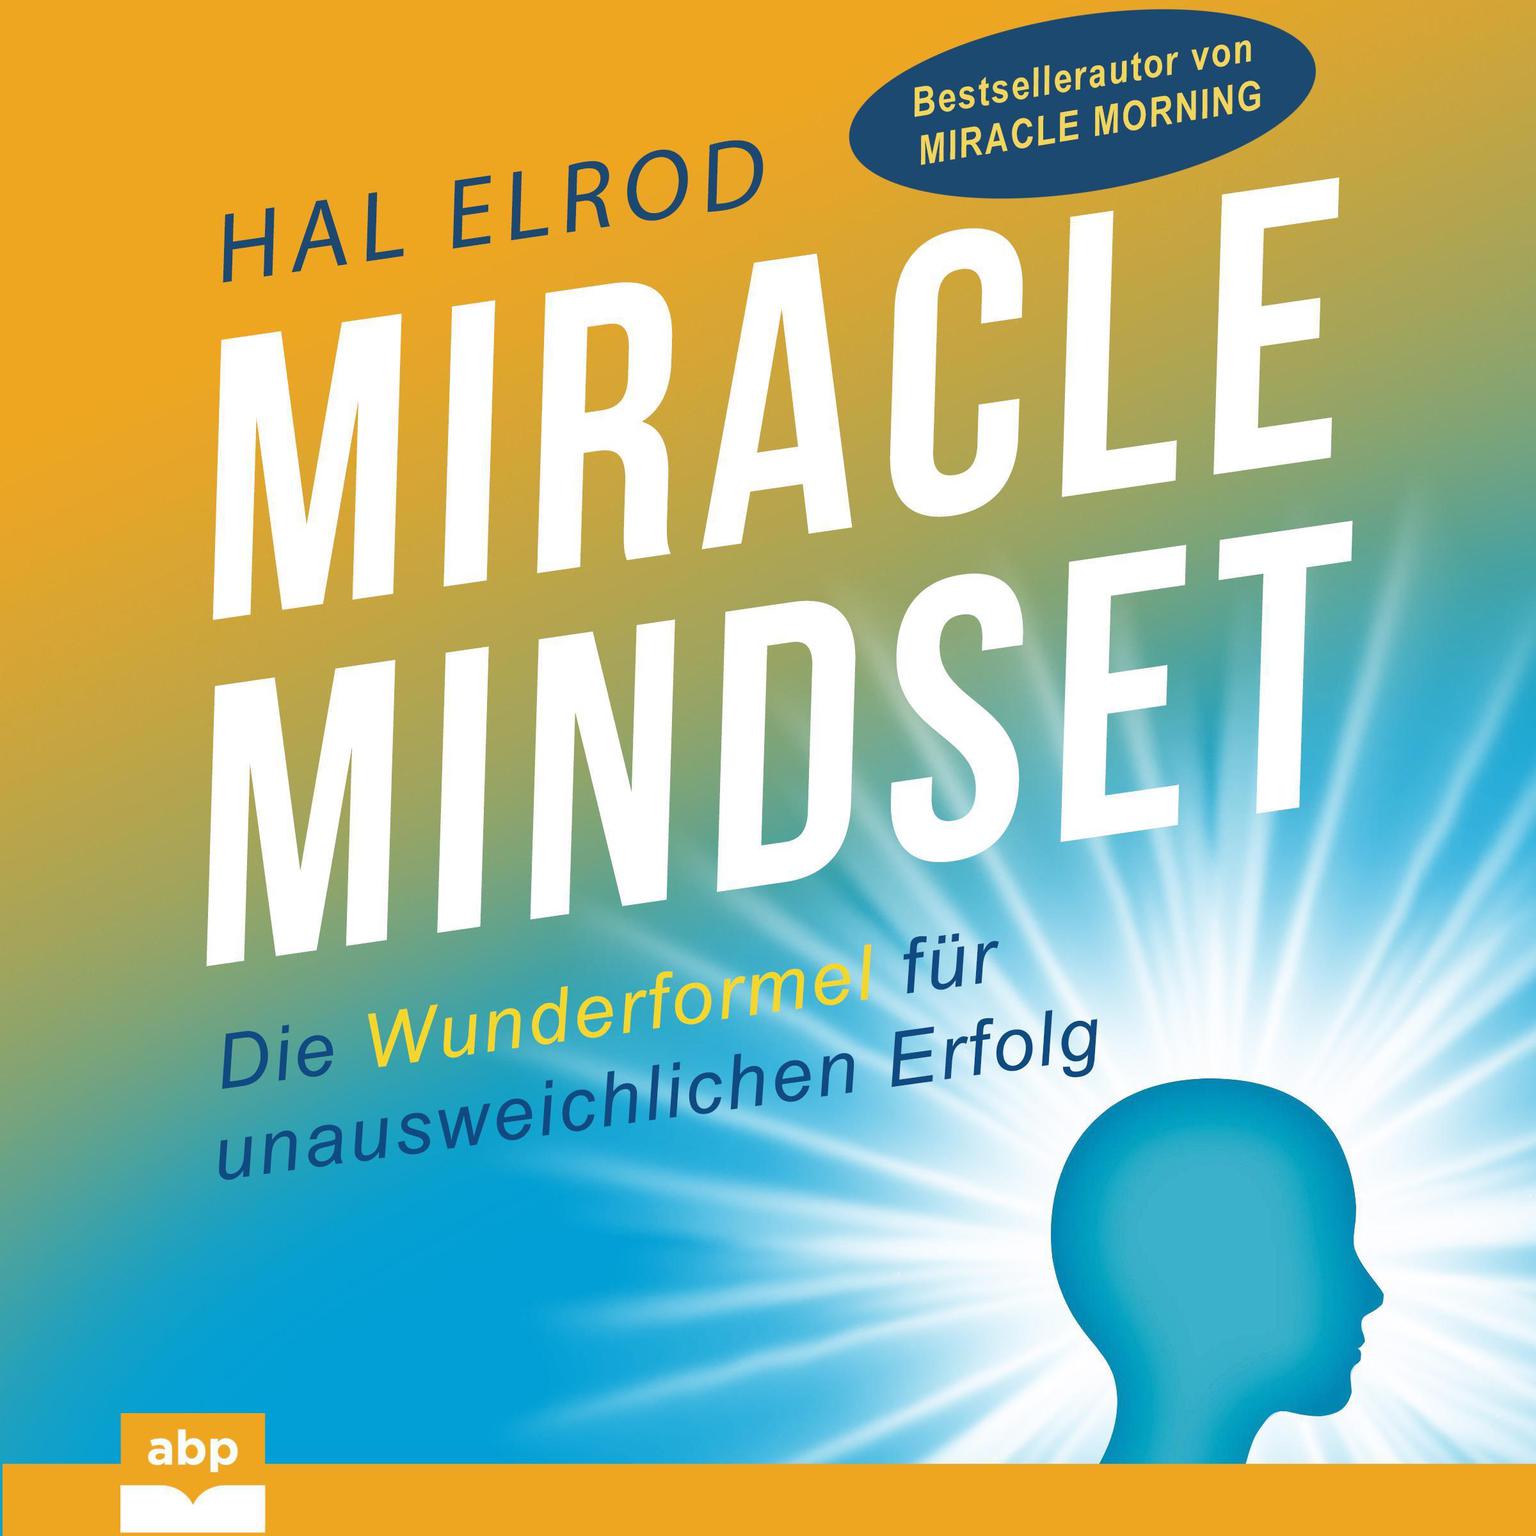 Miracle Mindset: Die Wunderformel für unausweichlichen Erfolg Audiobook, by Hal Elrod